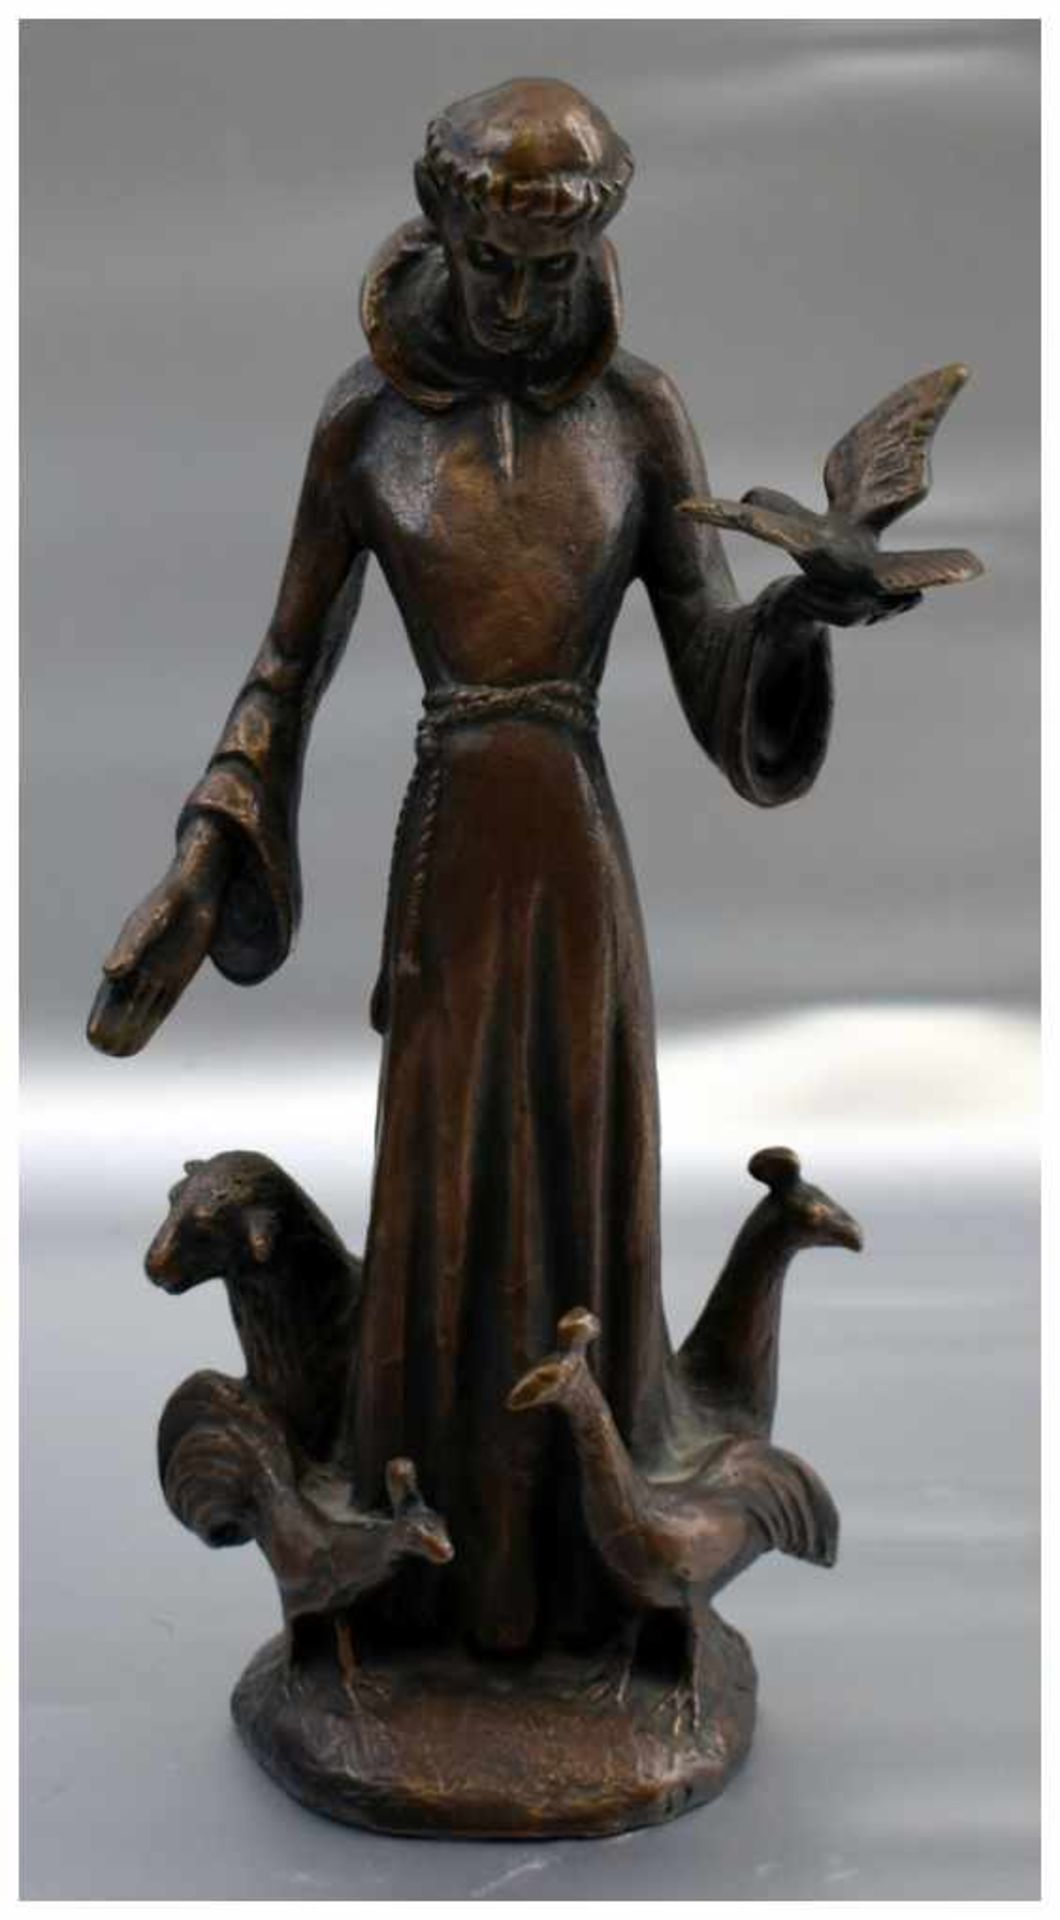 Heiliger Franziskus Bronze, patiniert, auf Sockel stehend von Tieren umgeben, Entwurf Karlheinz